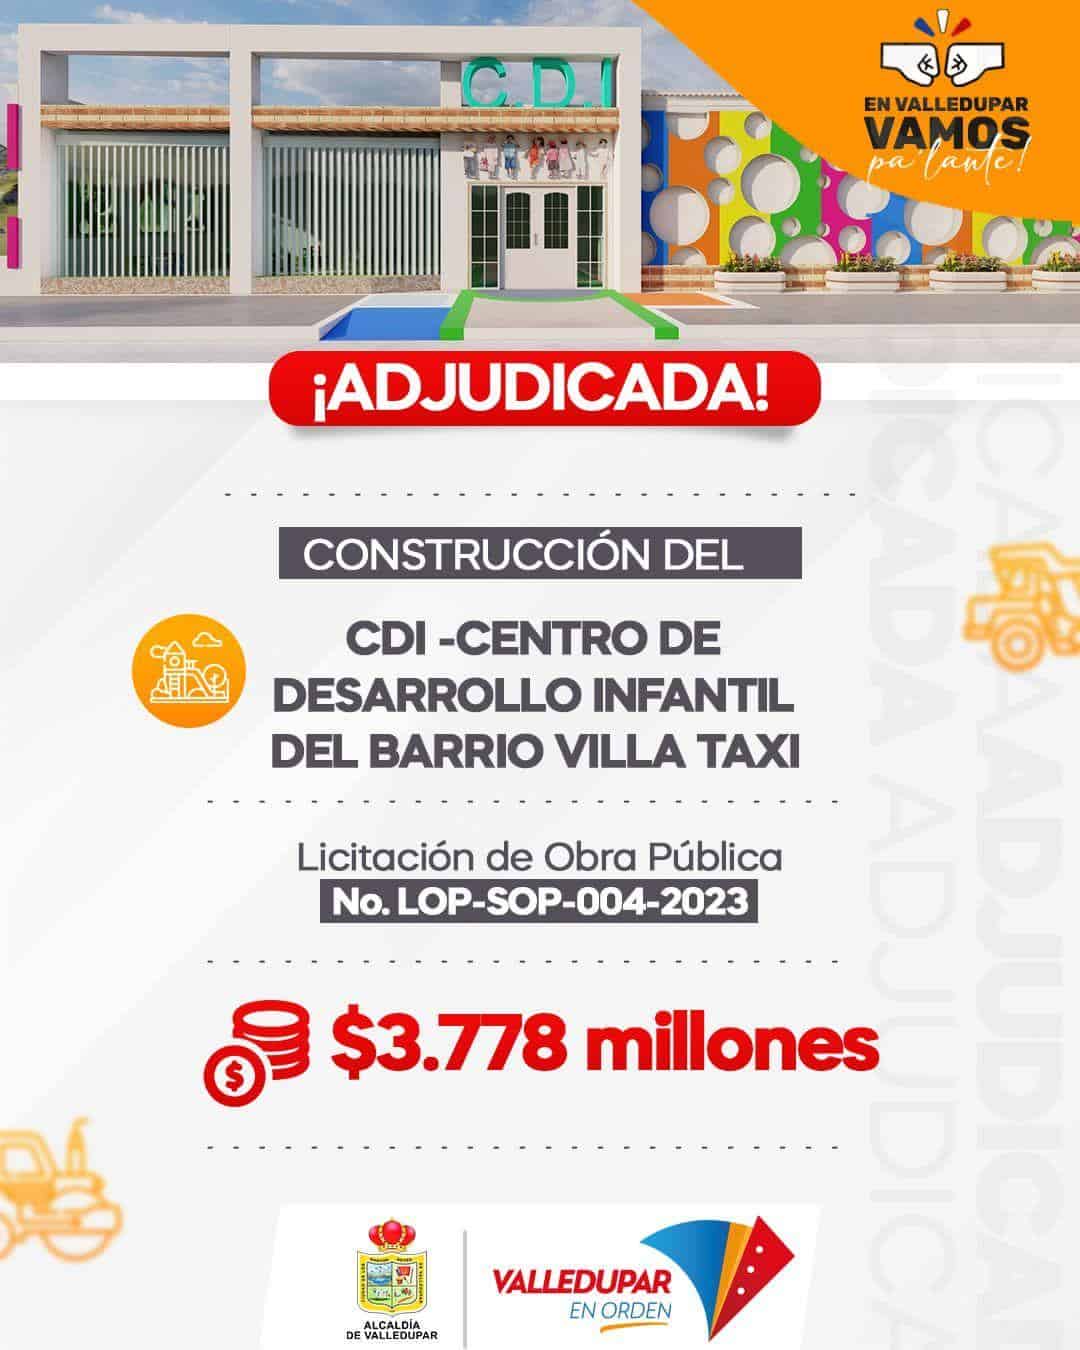 Gobierno municipal de Valledupar adjudicó construcción del CDI del barrio Villa Taxi al sur de la ciudad